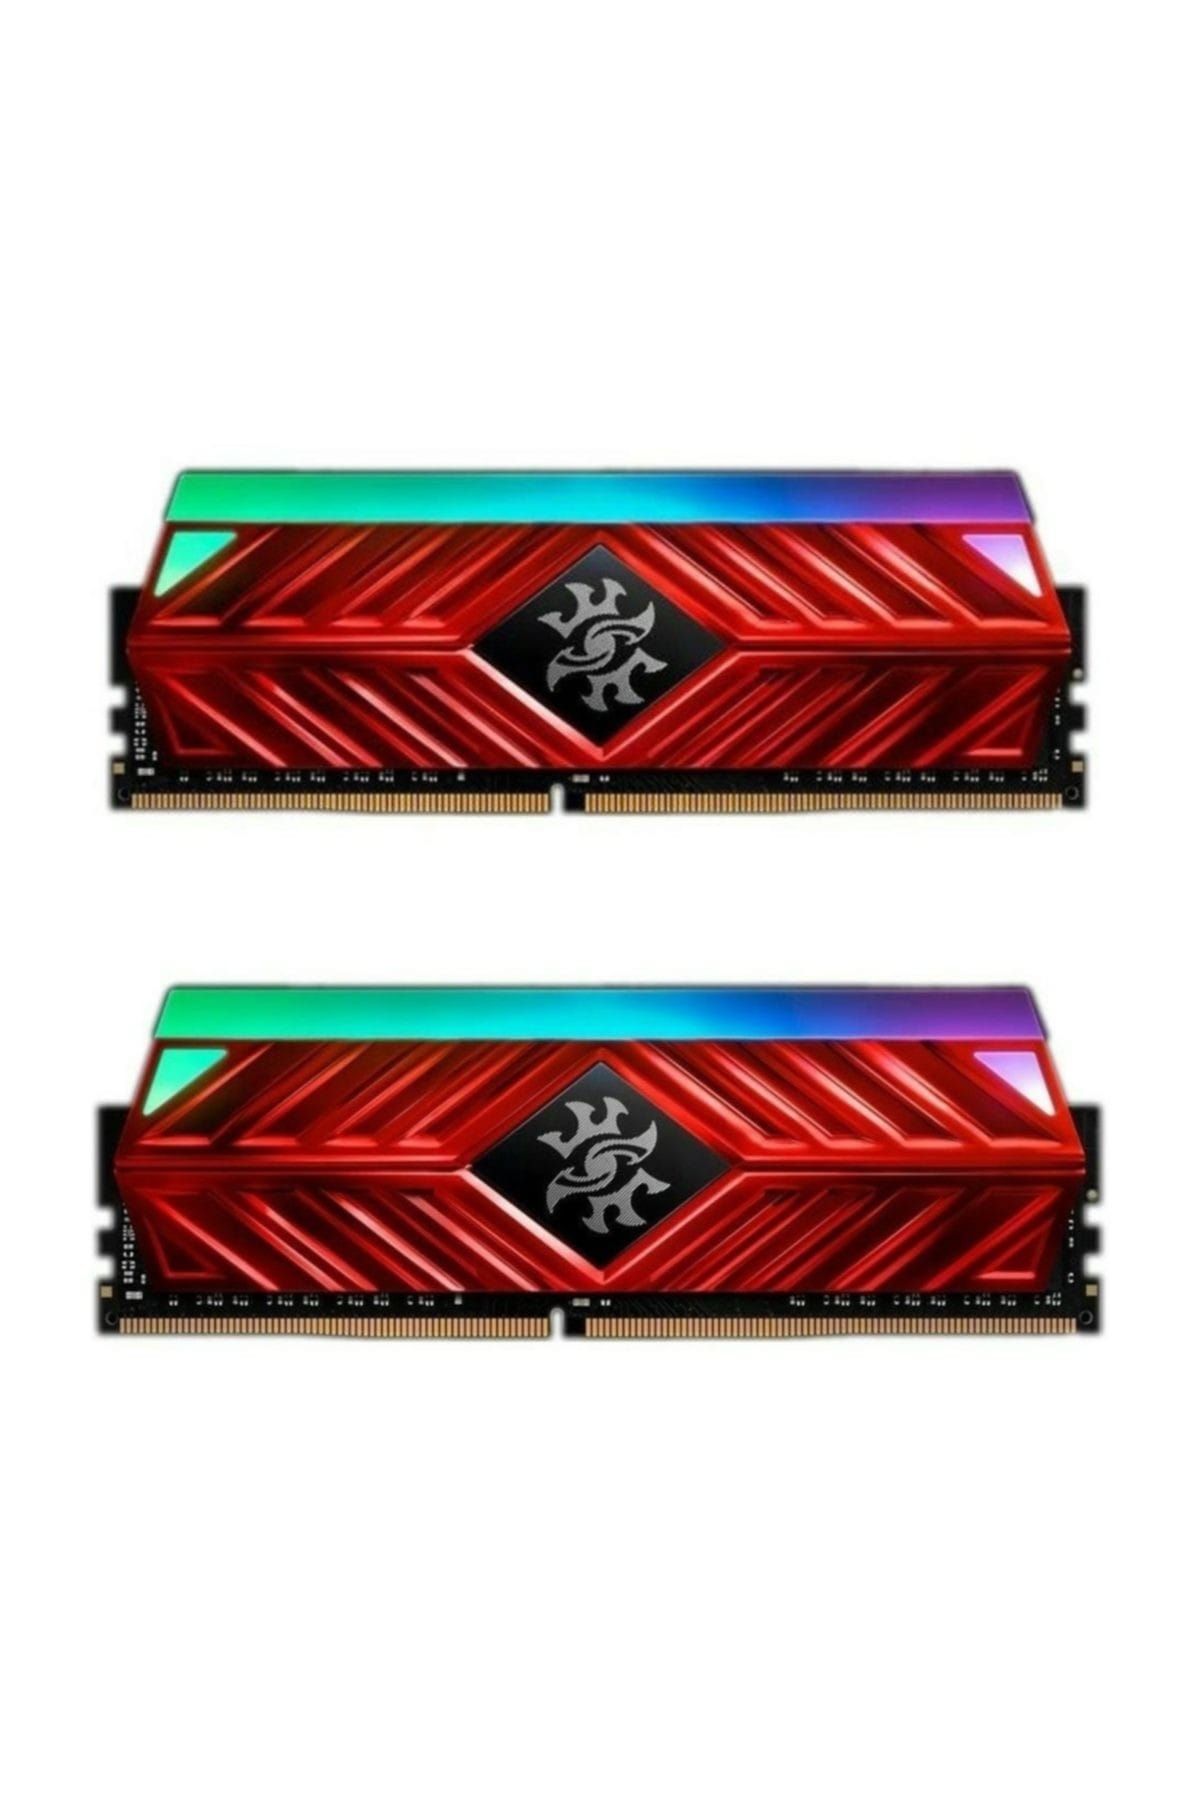 XPG 16GB (2x8GB) Spectrix D41 3000MHz DDR4 CL16 RGB Dual Kit Ram AX4U300038G16A-DR41